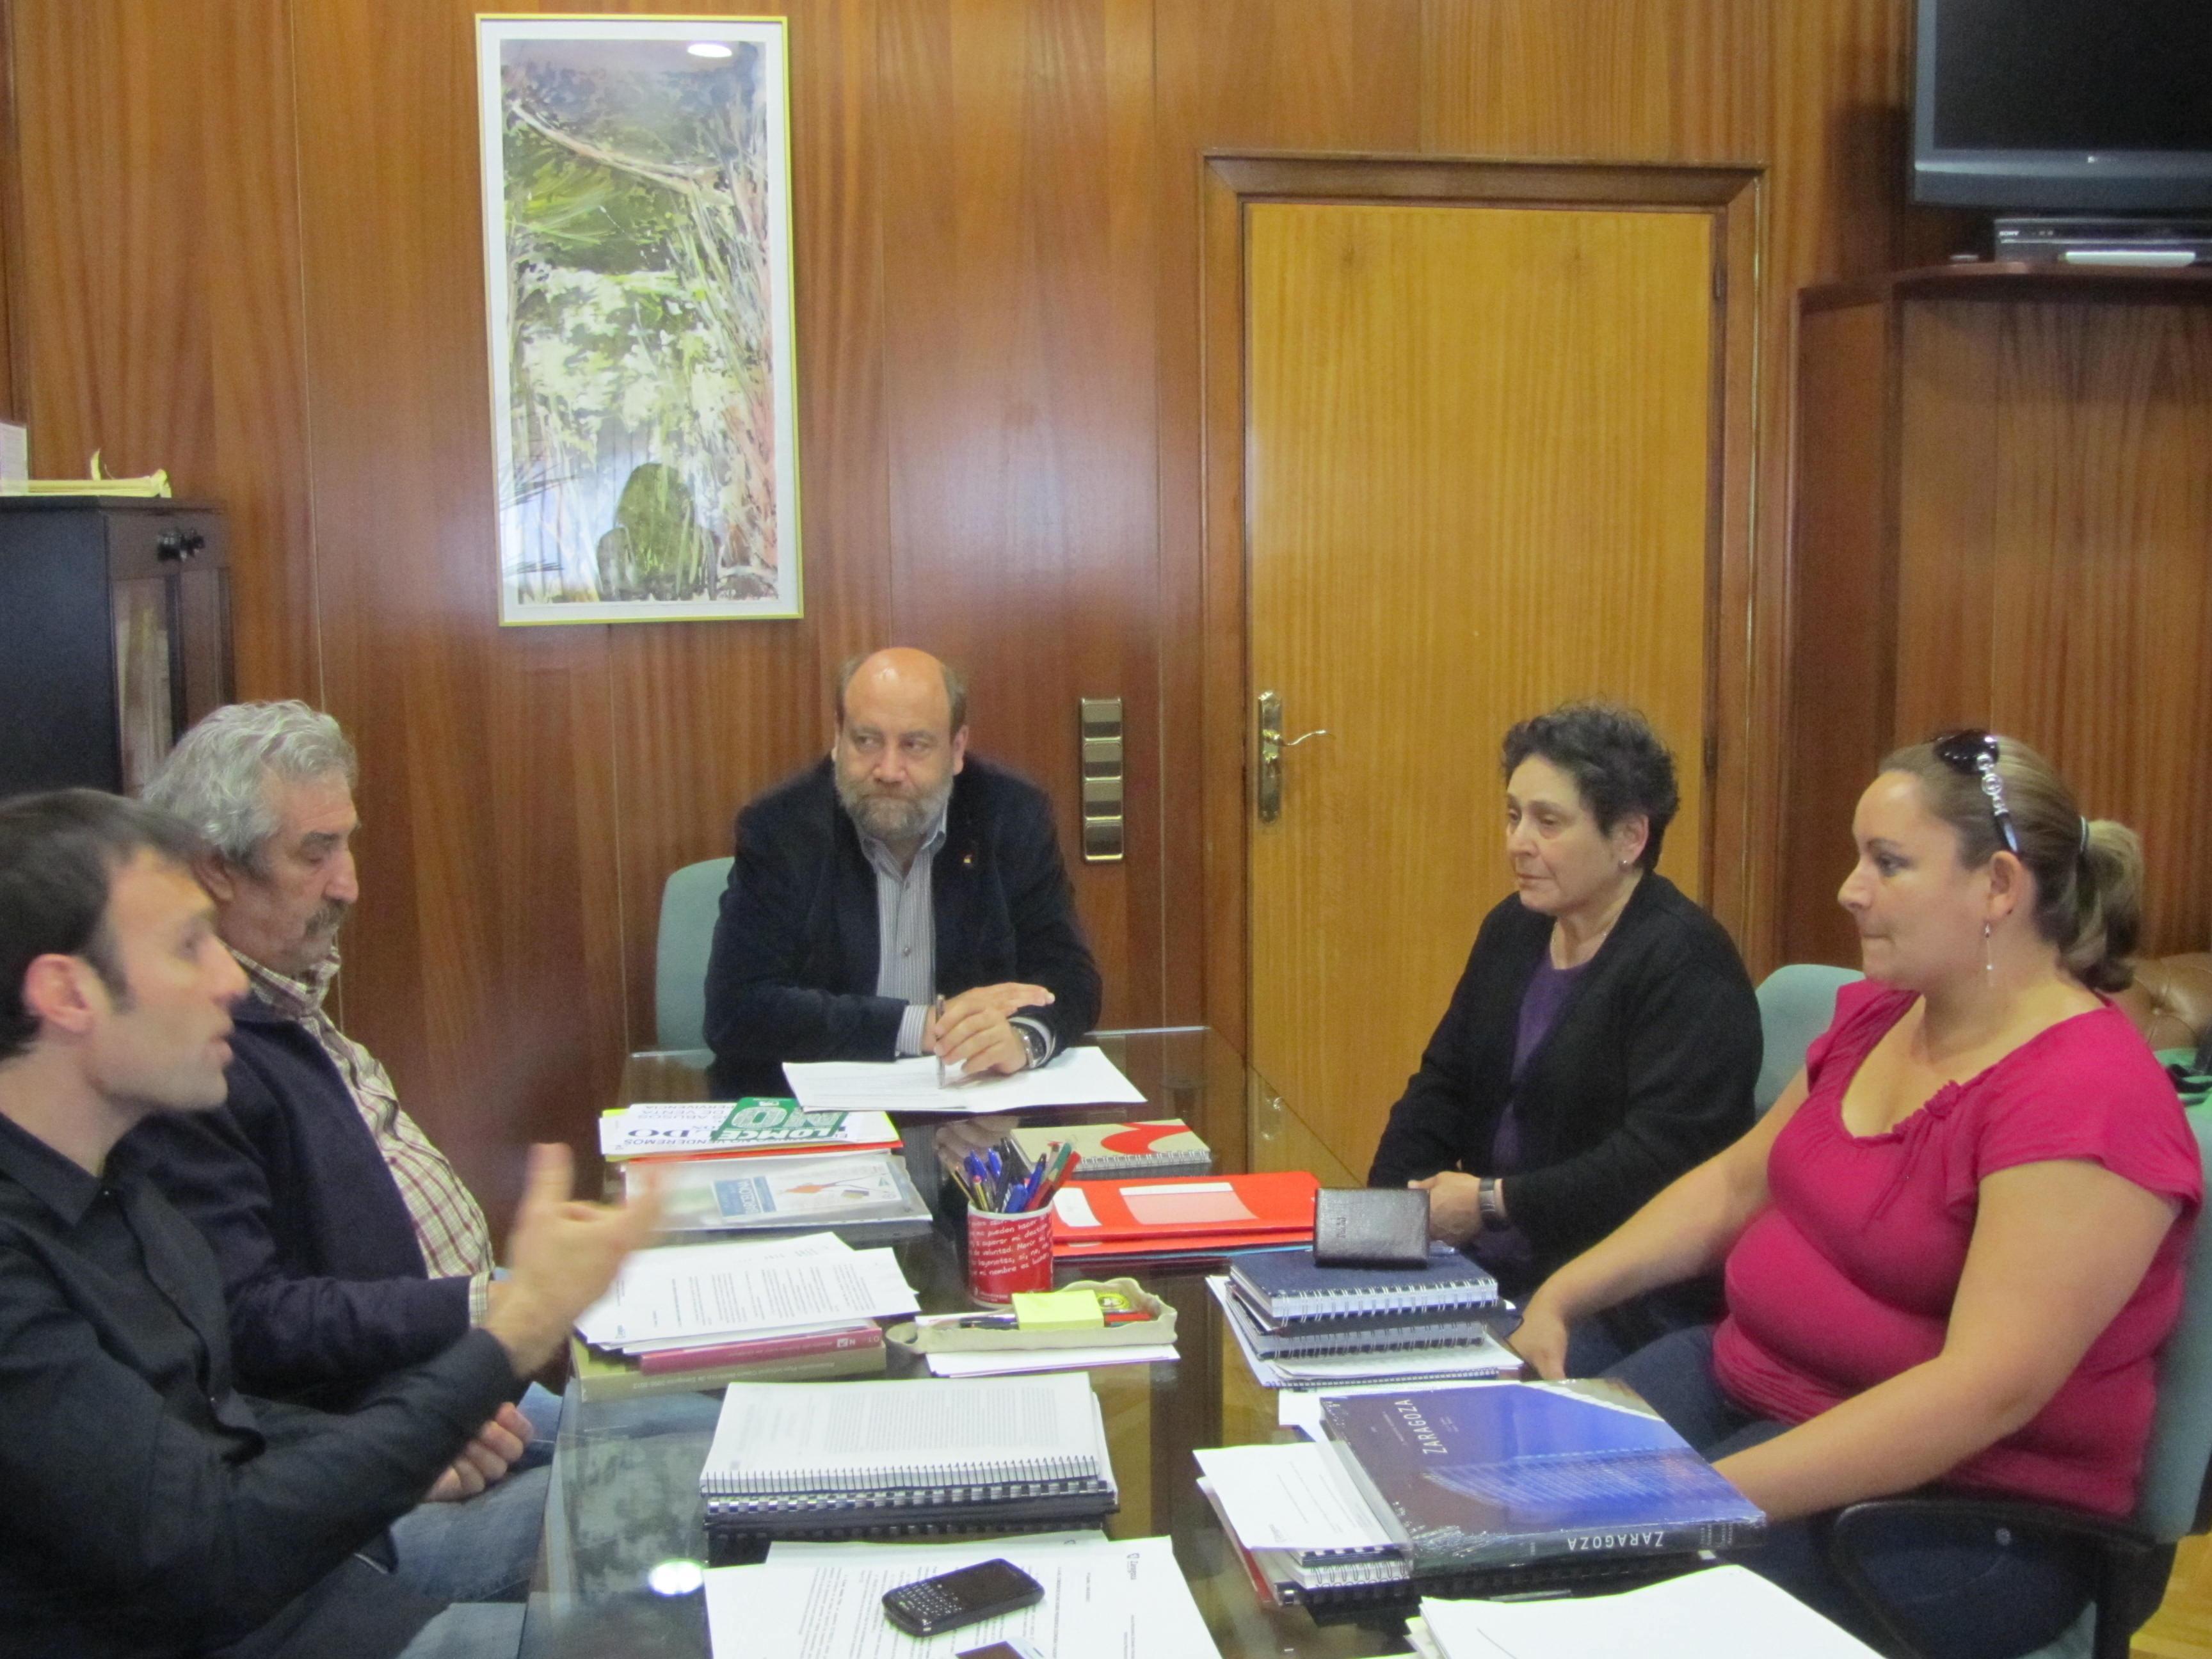 Nos reunimos con una concejala nicaragüense para profundizar en nuevas vías de participación ciudadana